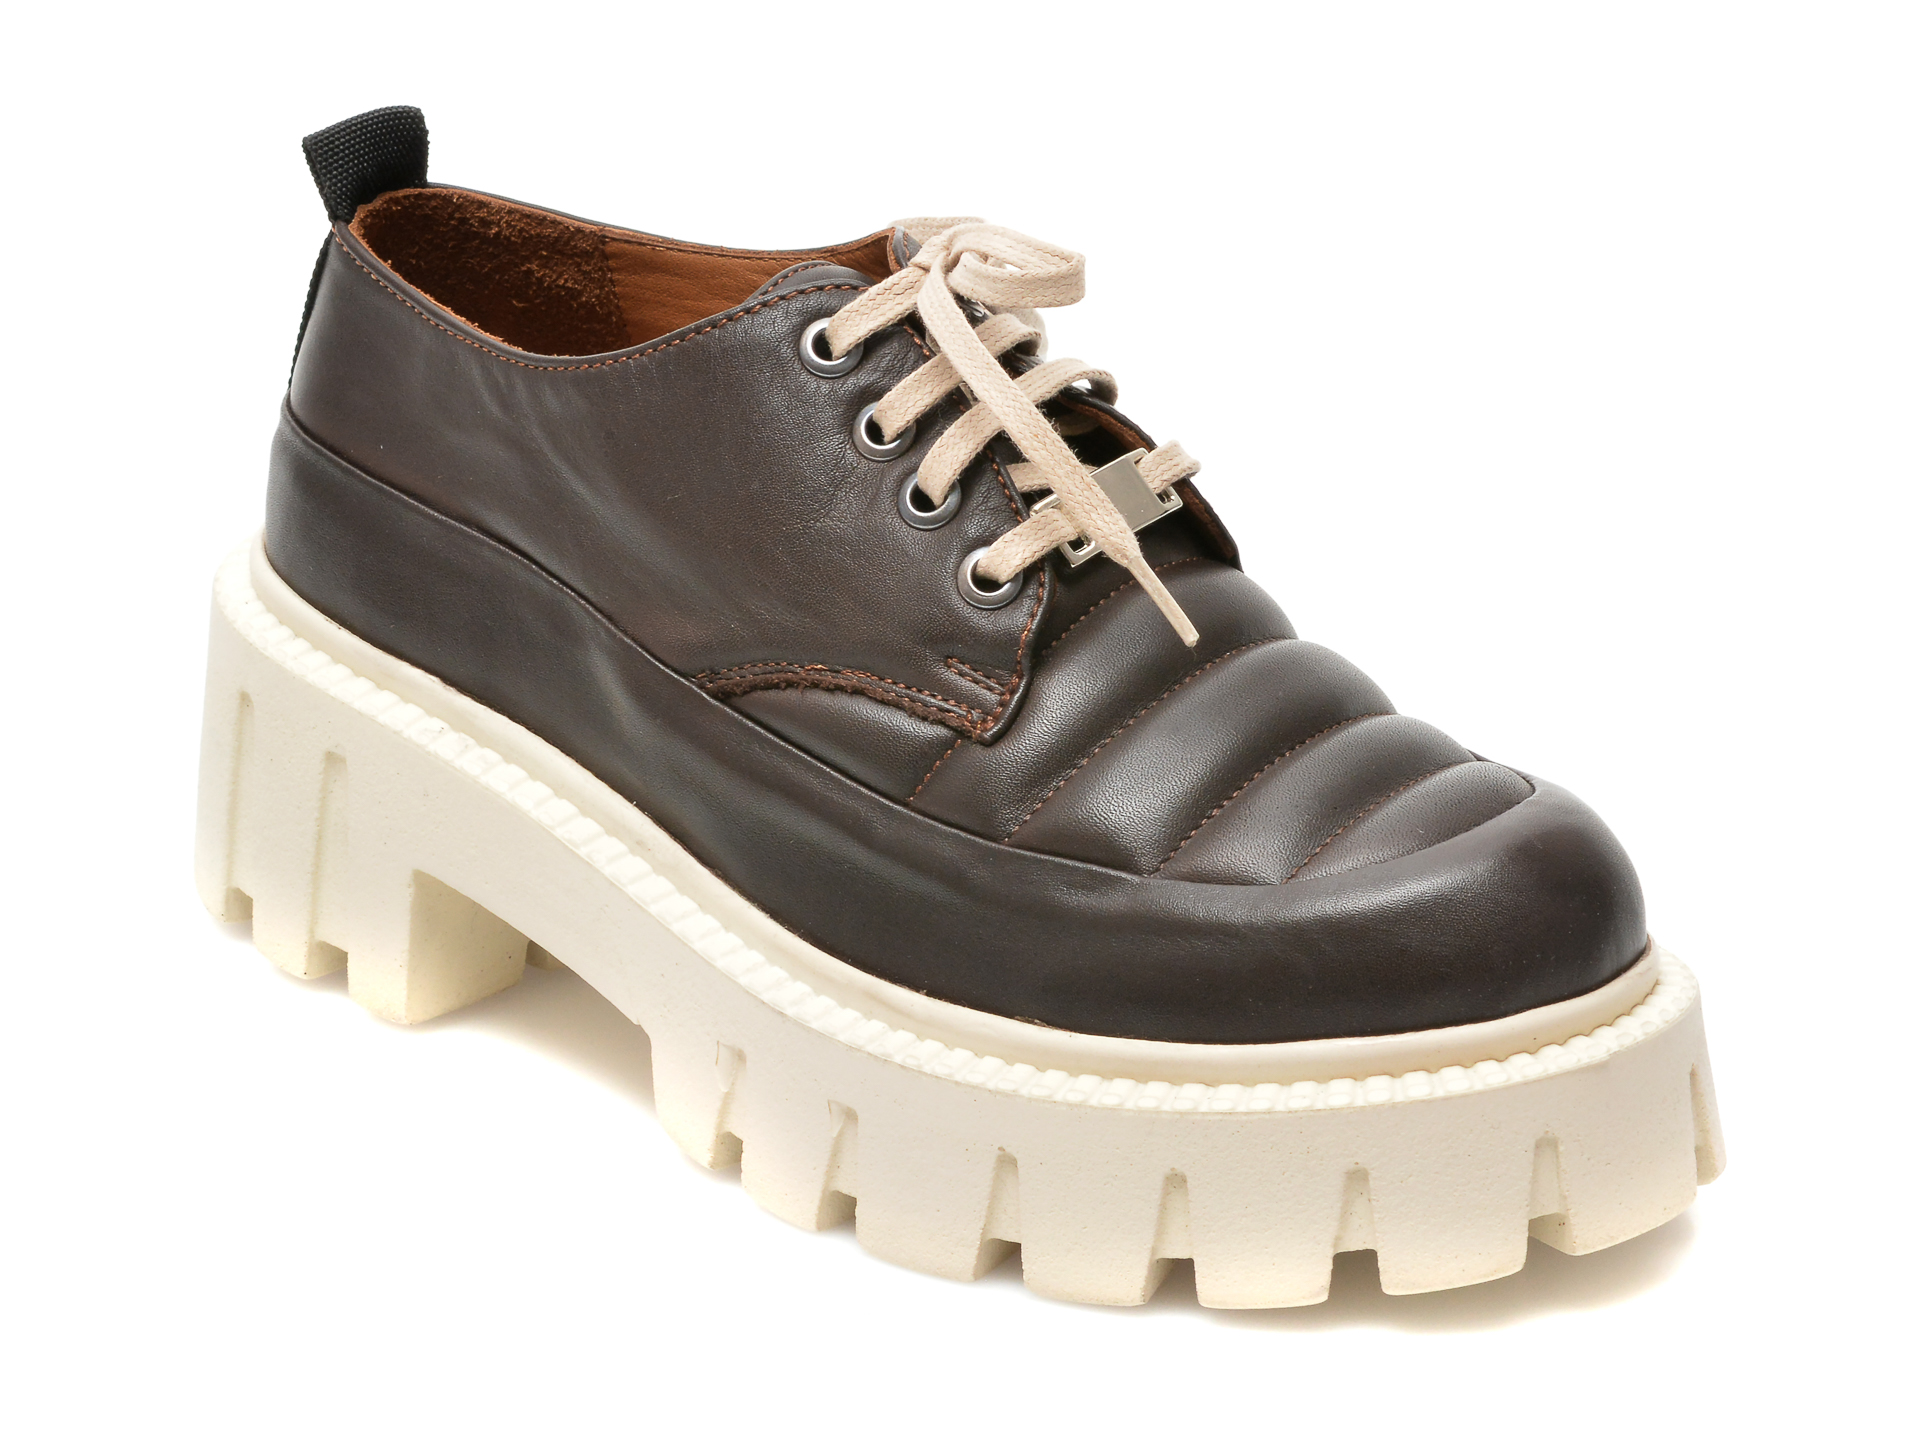 Pantofi FLAVIA PASSINI maro, 411204, din piele naturala Flavia Passini imagine noua